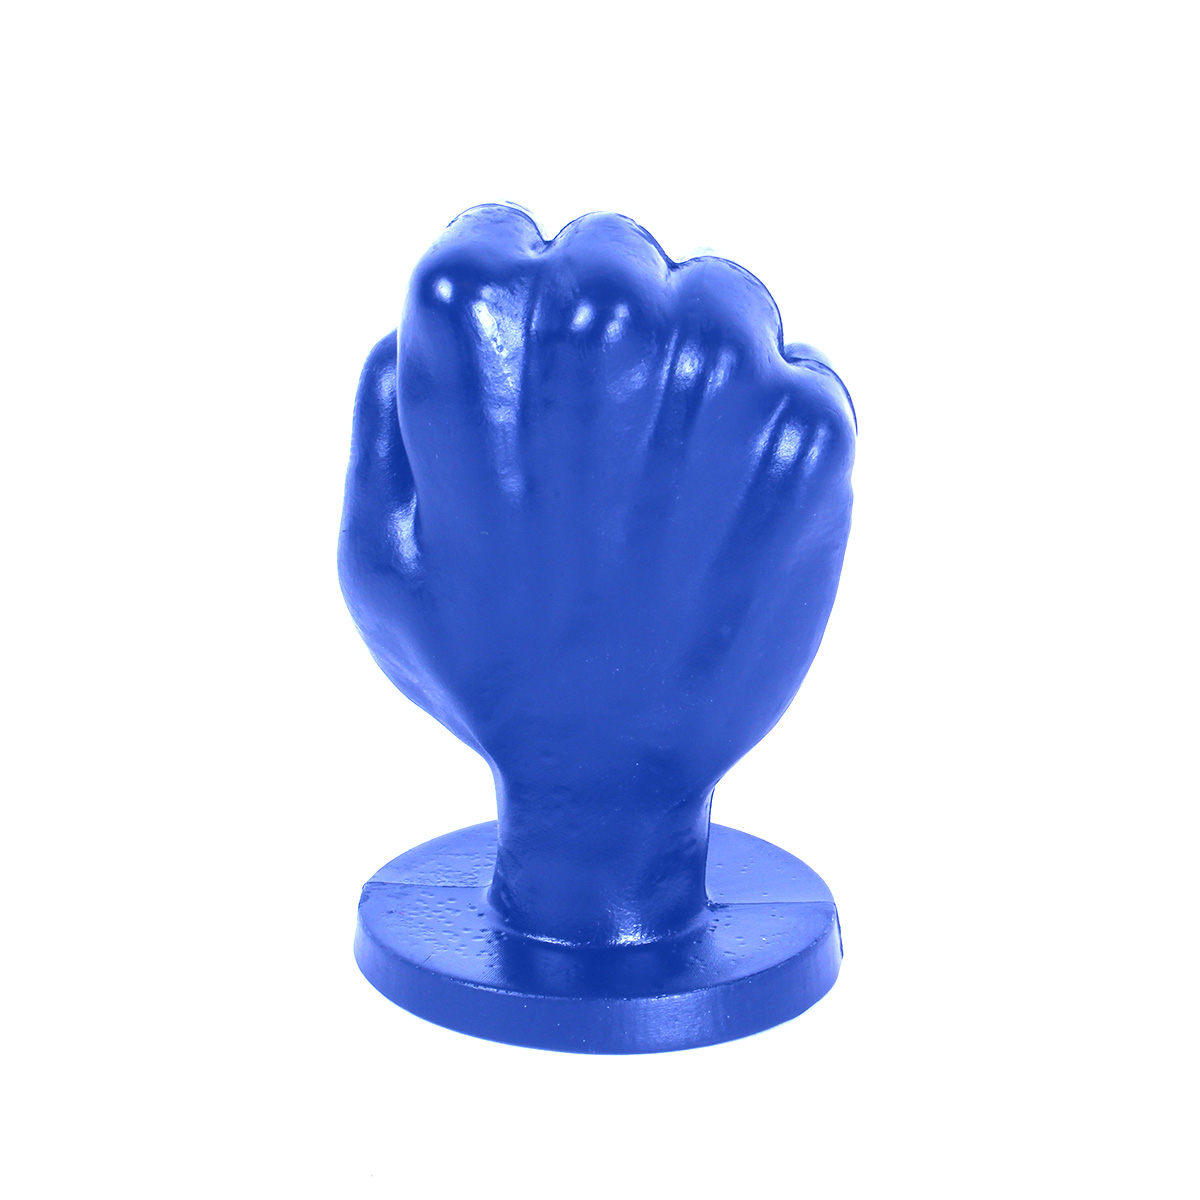 All-Blue-Fist-Small-ABB92-115-ABB92-2